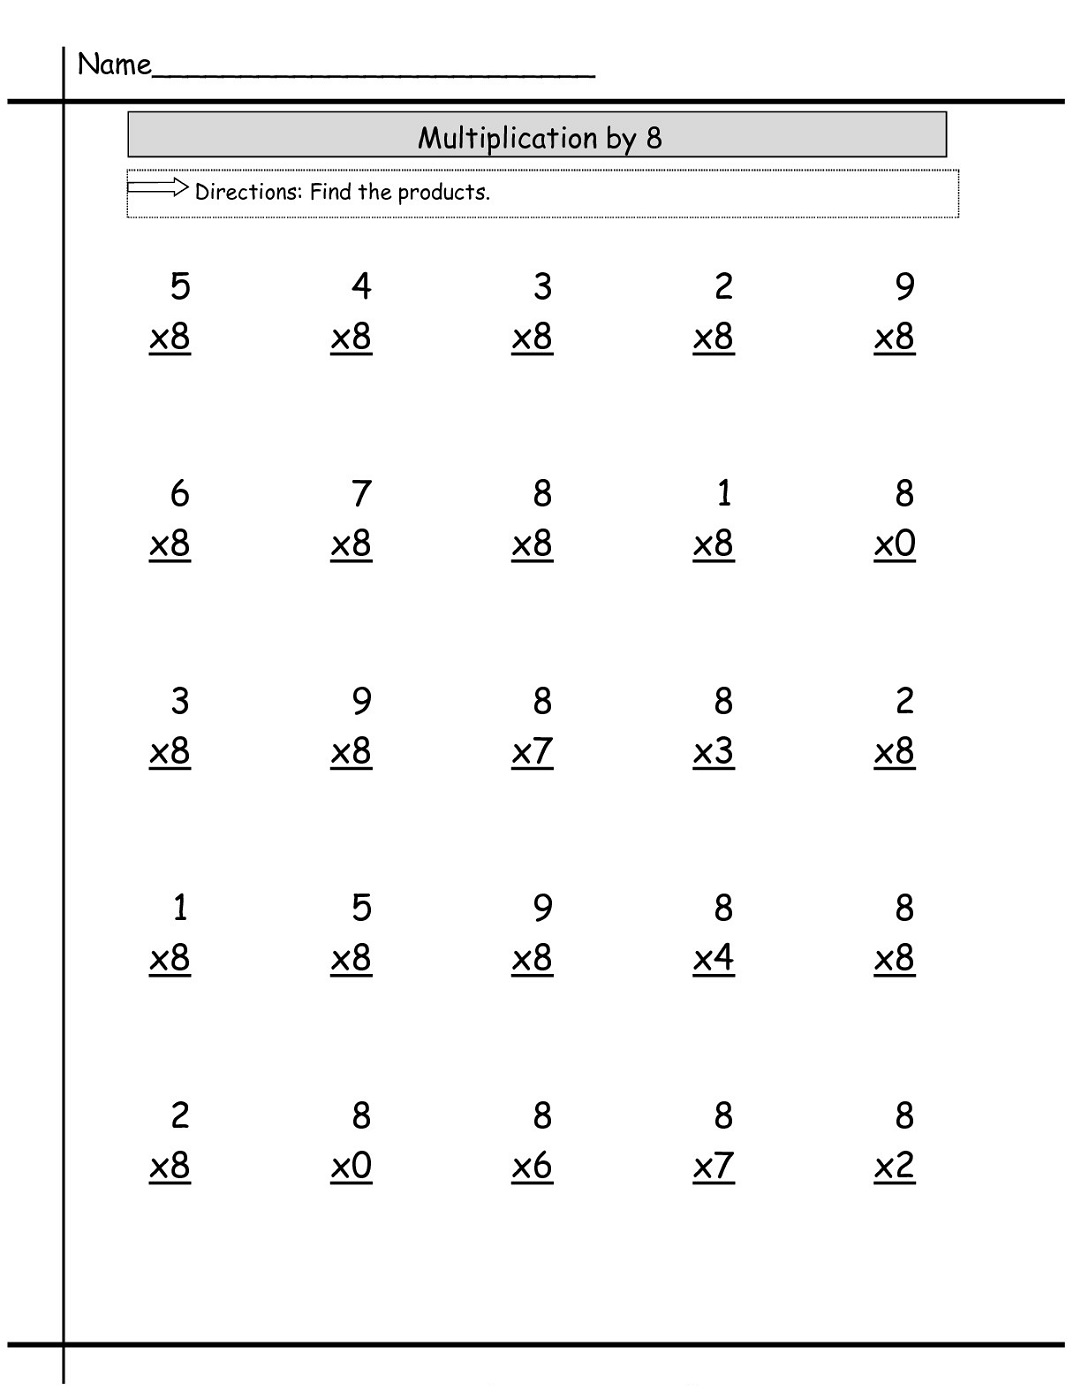 multiply-by-8-worksheet-simple